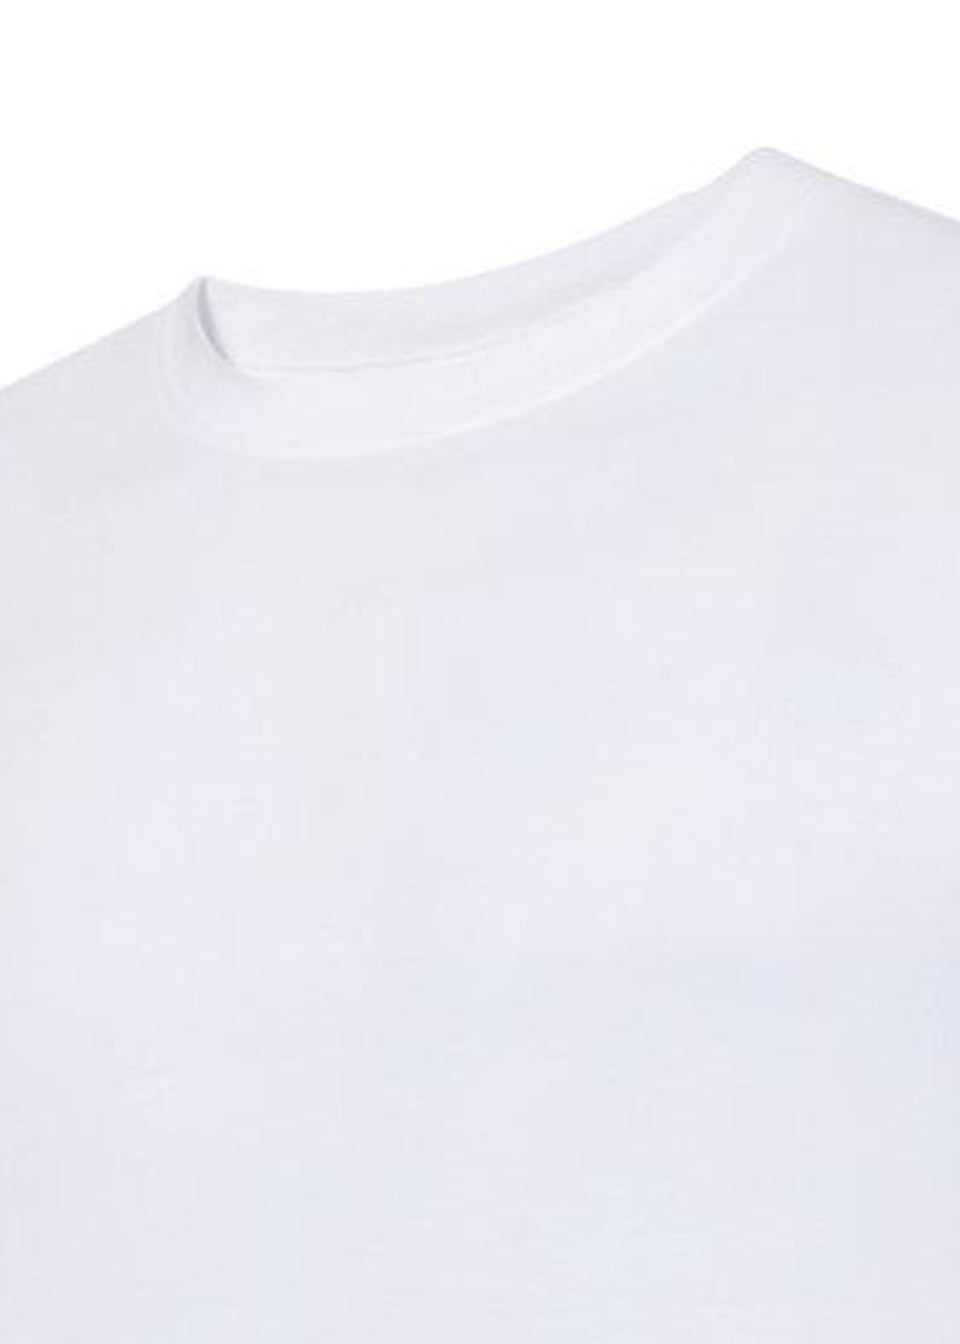 Umbro Kids White/Black Club Leisure T-Shirt (7-10yrs)